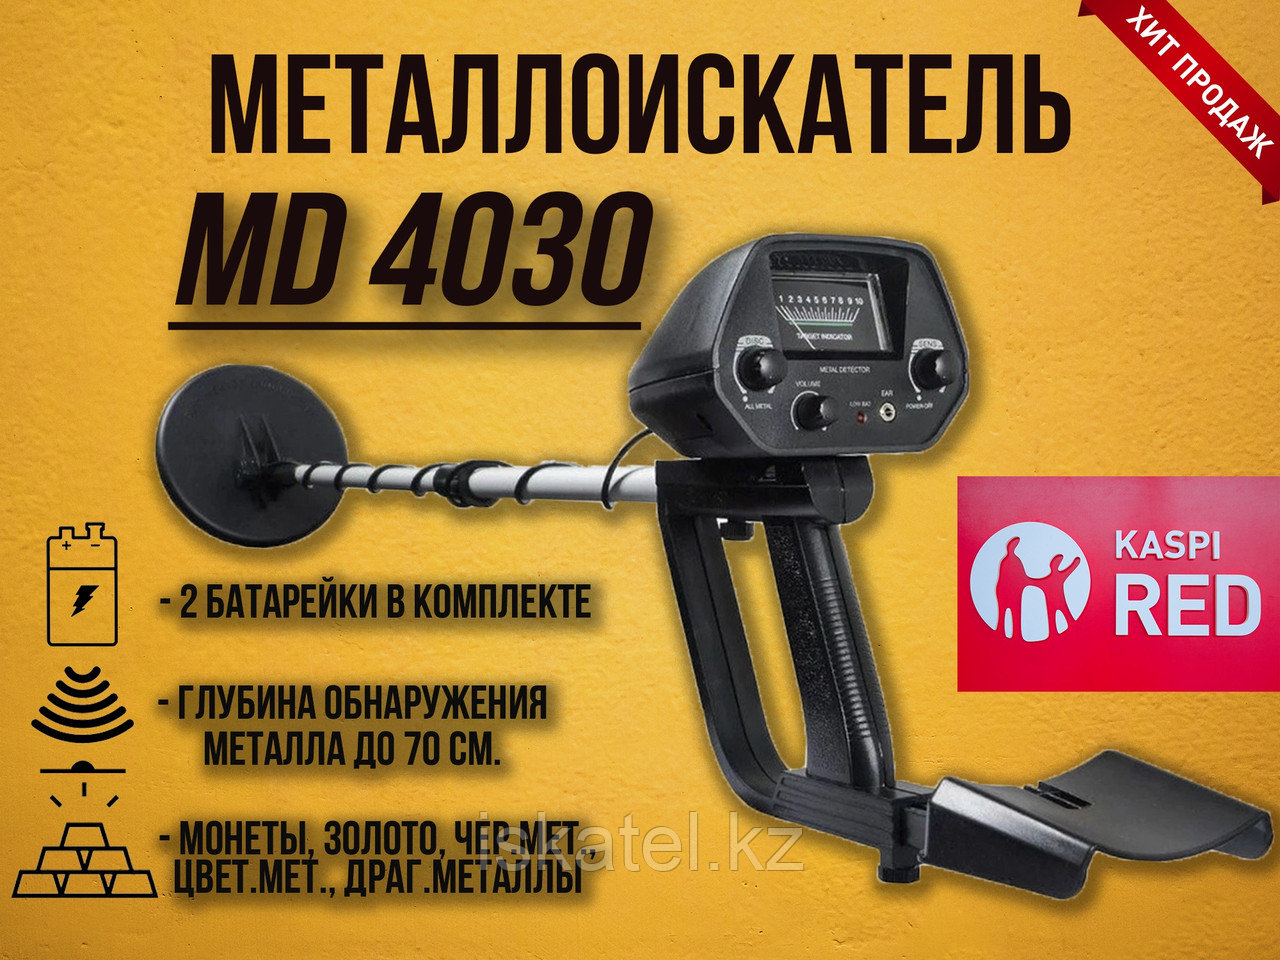 Металлоискатель MD4030 - для поиска как чёрного металла так и для золота, серебра и монет